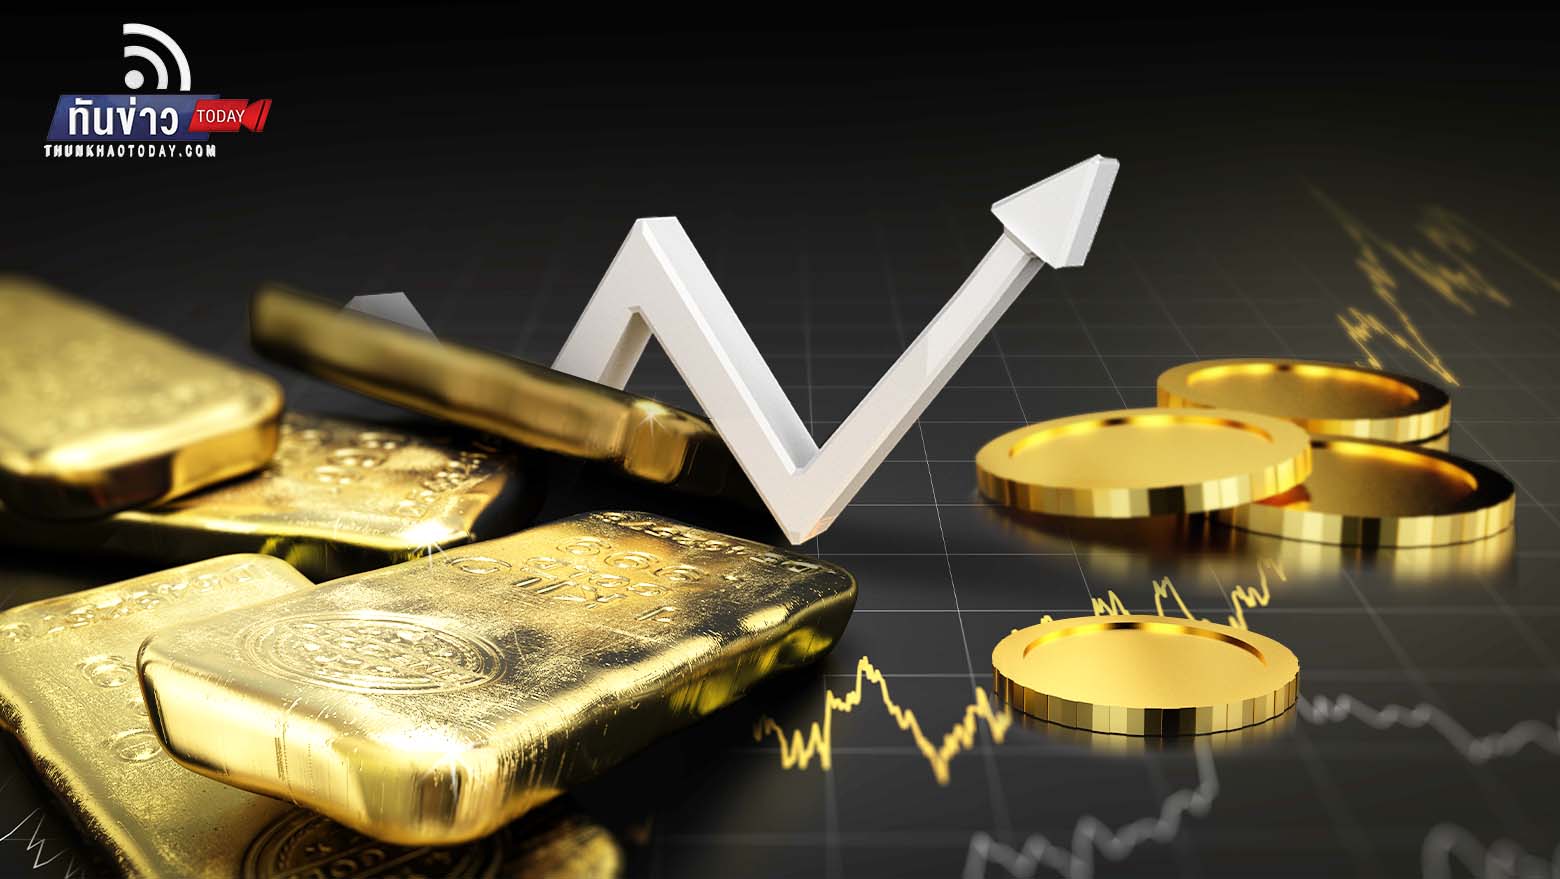 นักวิเคราะห์คาดทองคำจ่อแตะ 1,950 ดอลลาร์ สูงสุดในรอบ 8 เดือน หวั่นเศรษฐกิจโลกถดถอย หลังเงินเฟ้อสหรัฐฯ แผ่วเหลือ 6.5% สัปดาห์ก่อน